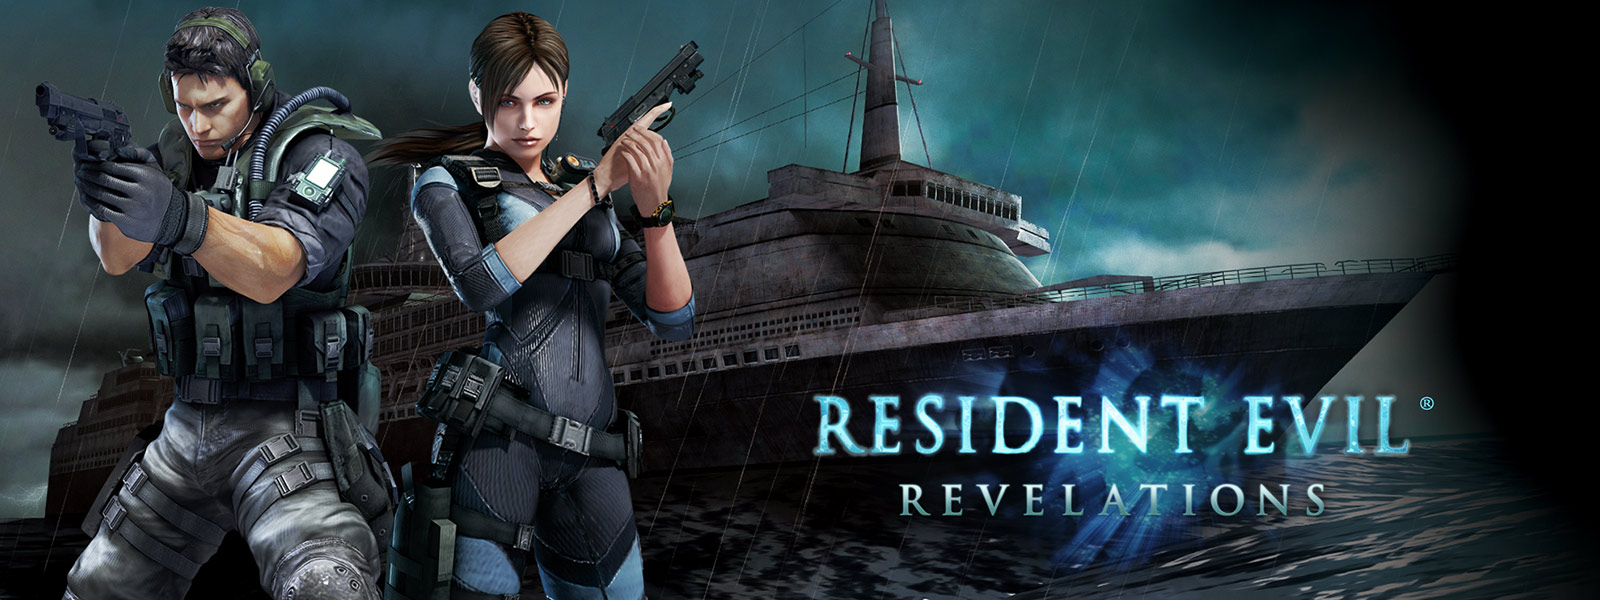 Resident Evil Revelations. Två karaktärer med pistoler framför ett spöklikt kryssningsfartyg